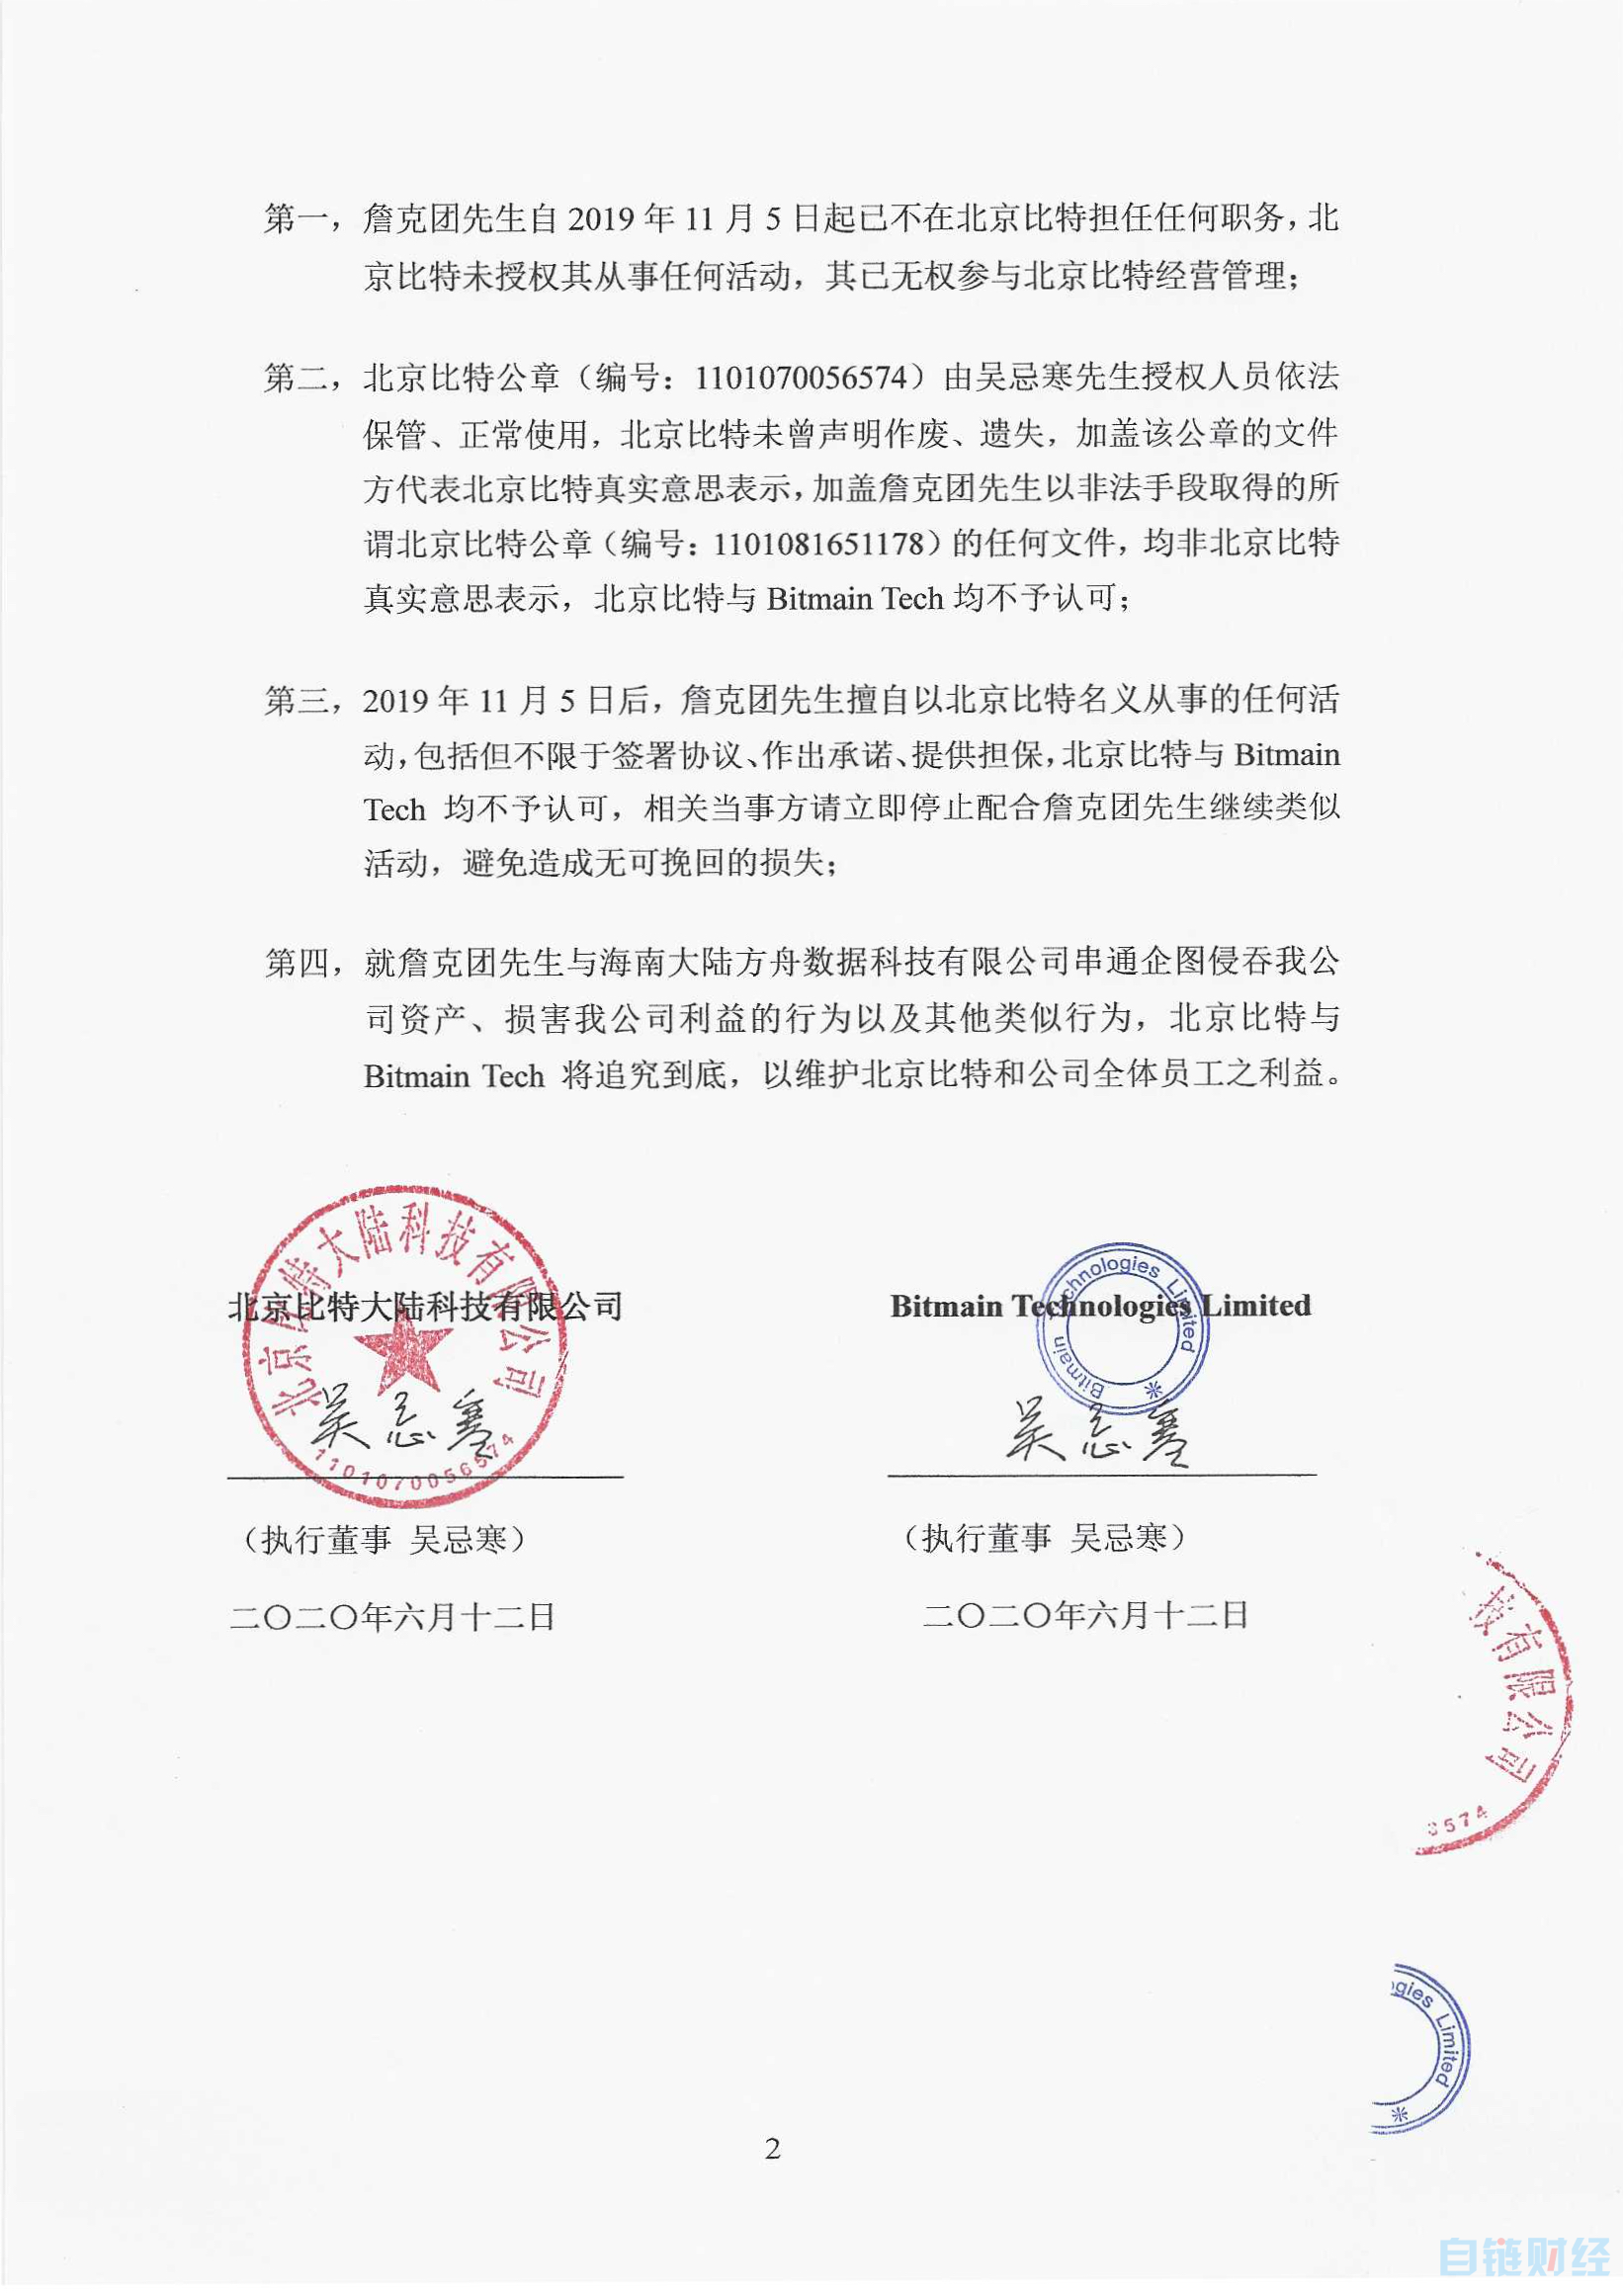 【王小鱼】北京比特与Bitmain Tech联合声明：不予认可詹克团活动法律效力-区块链315